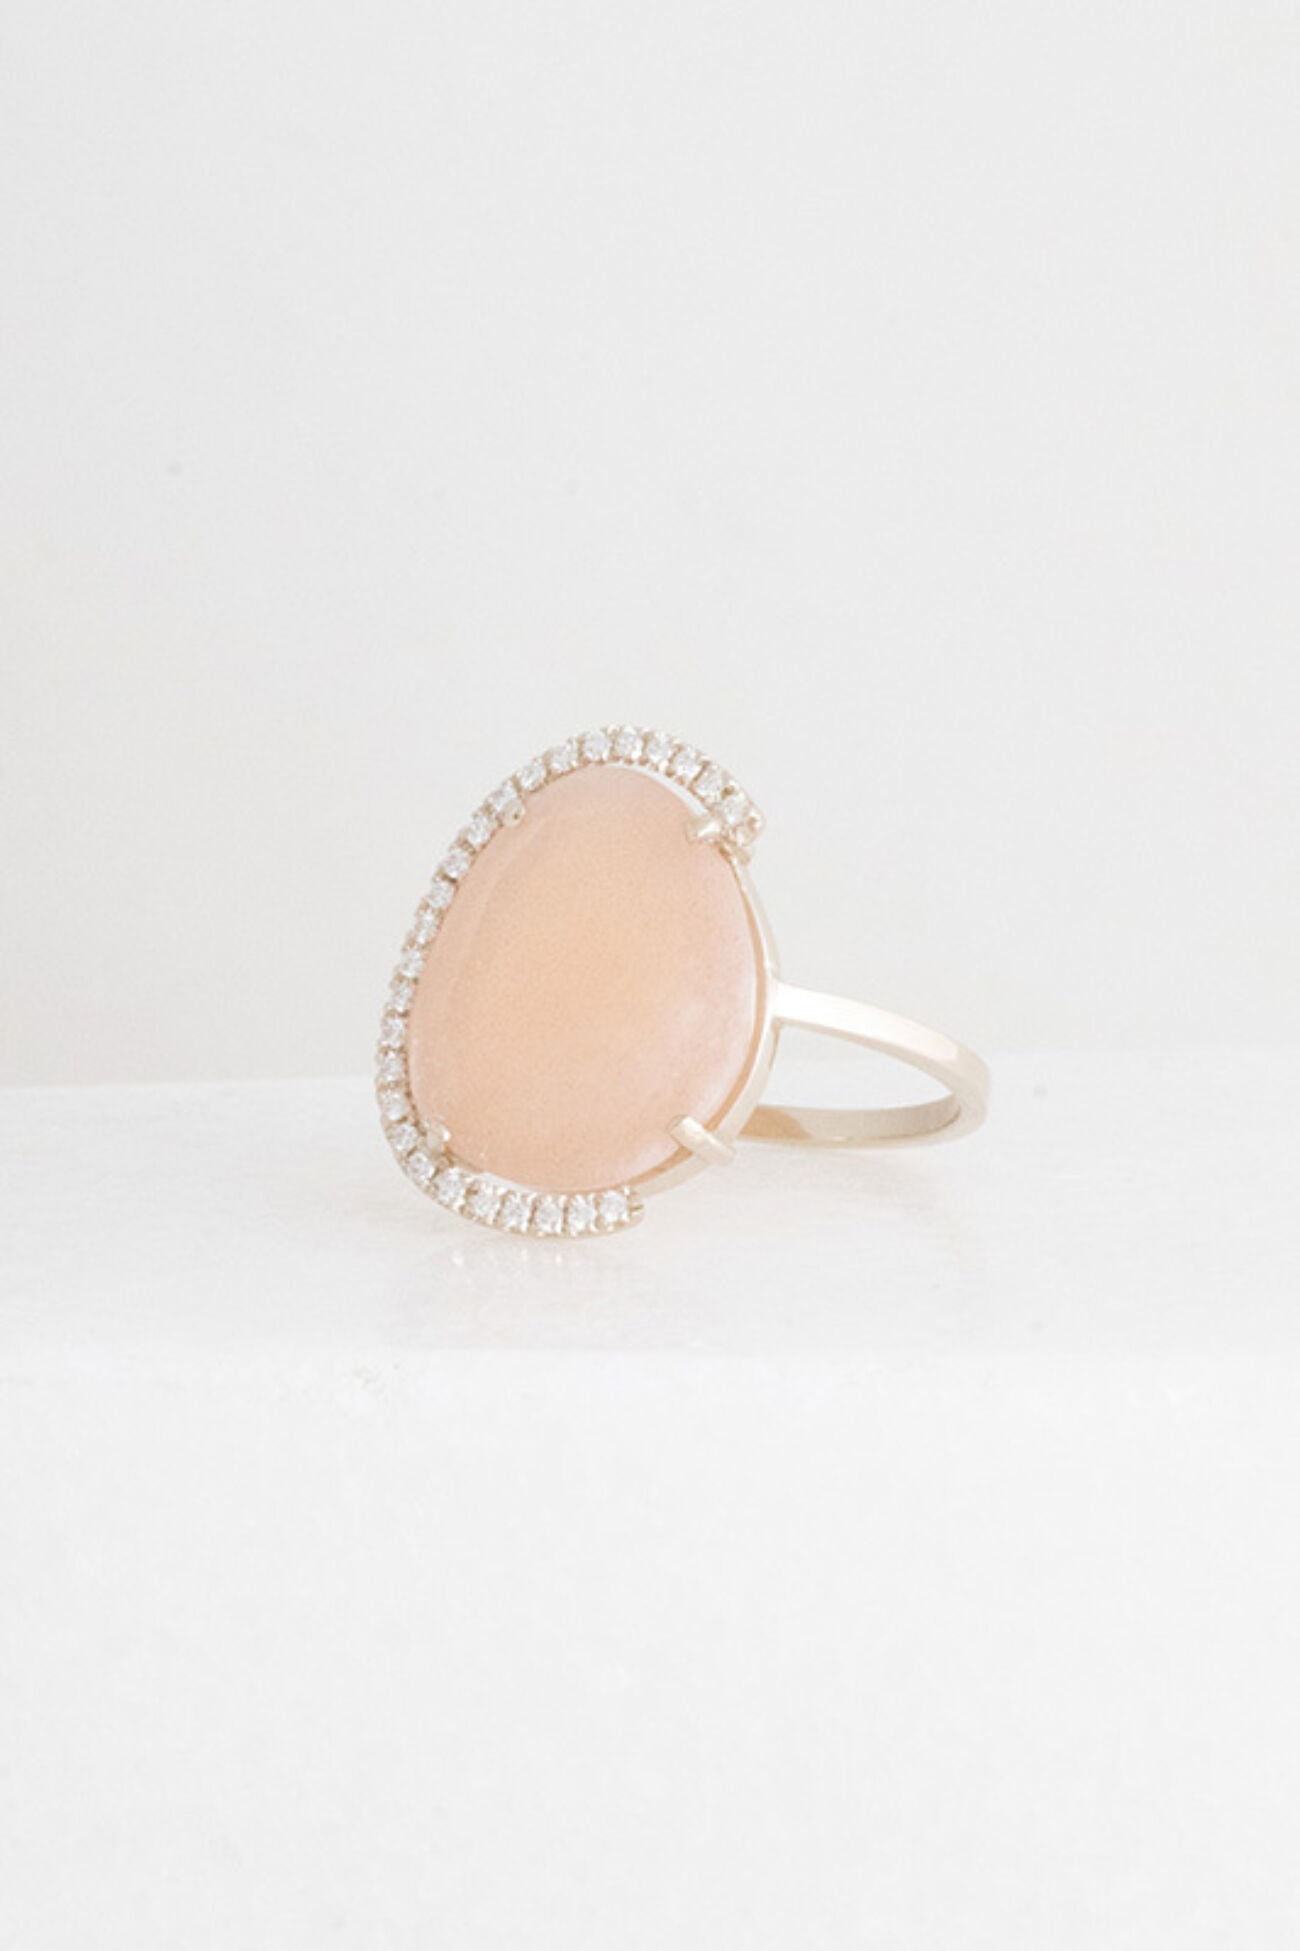 Elisa lee limited Exclusieve roze maansteen met halve organische halo ring 3